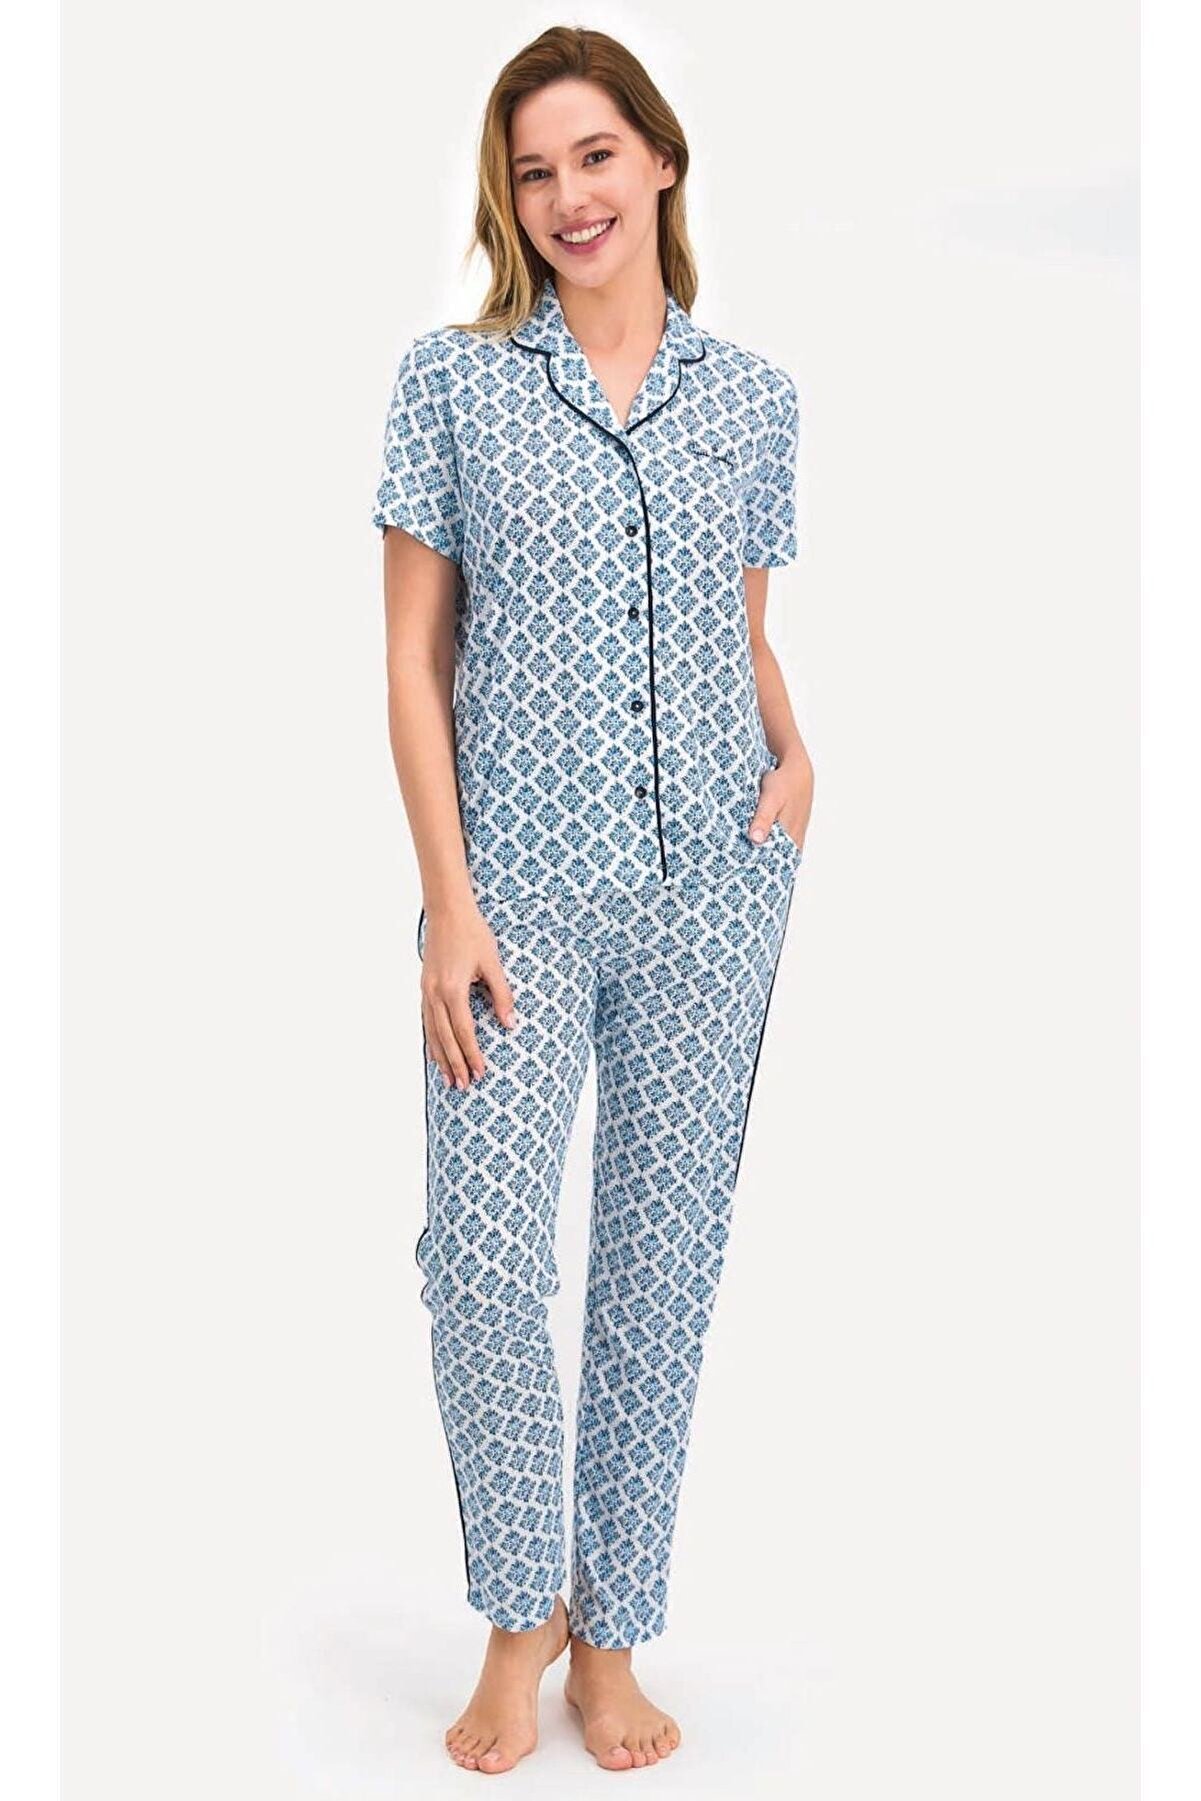 Pierre Cardin Pierrecardin 7709 Bayan Gömlek Pijama Takımı